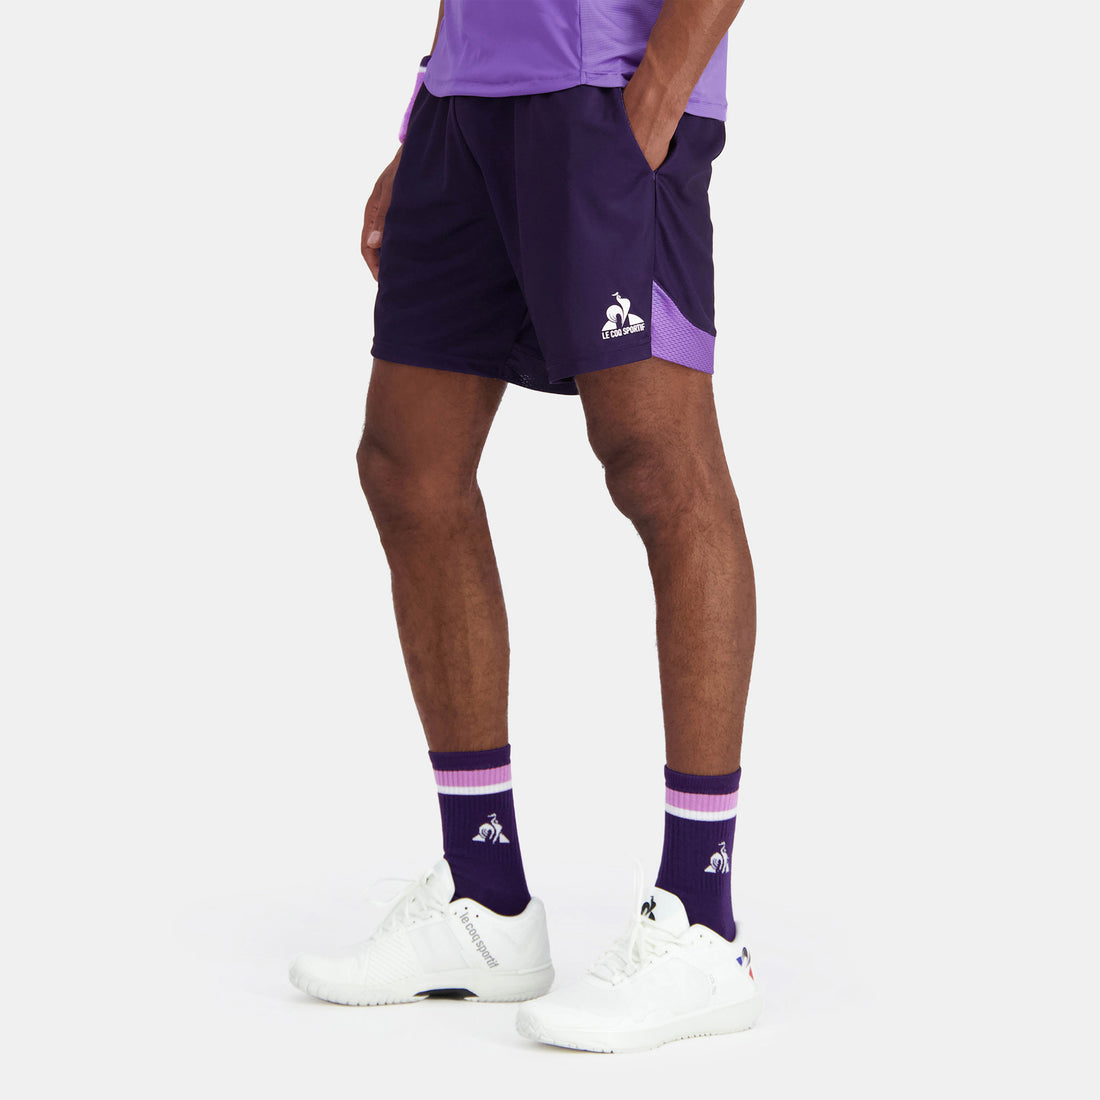 2410519-TENNIS PRO Short 24 N°1 M purple velvet  | Shorts for men